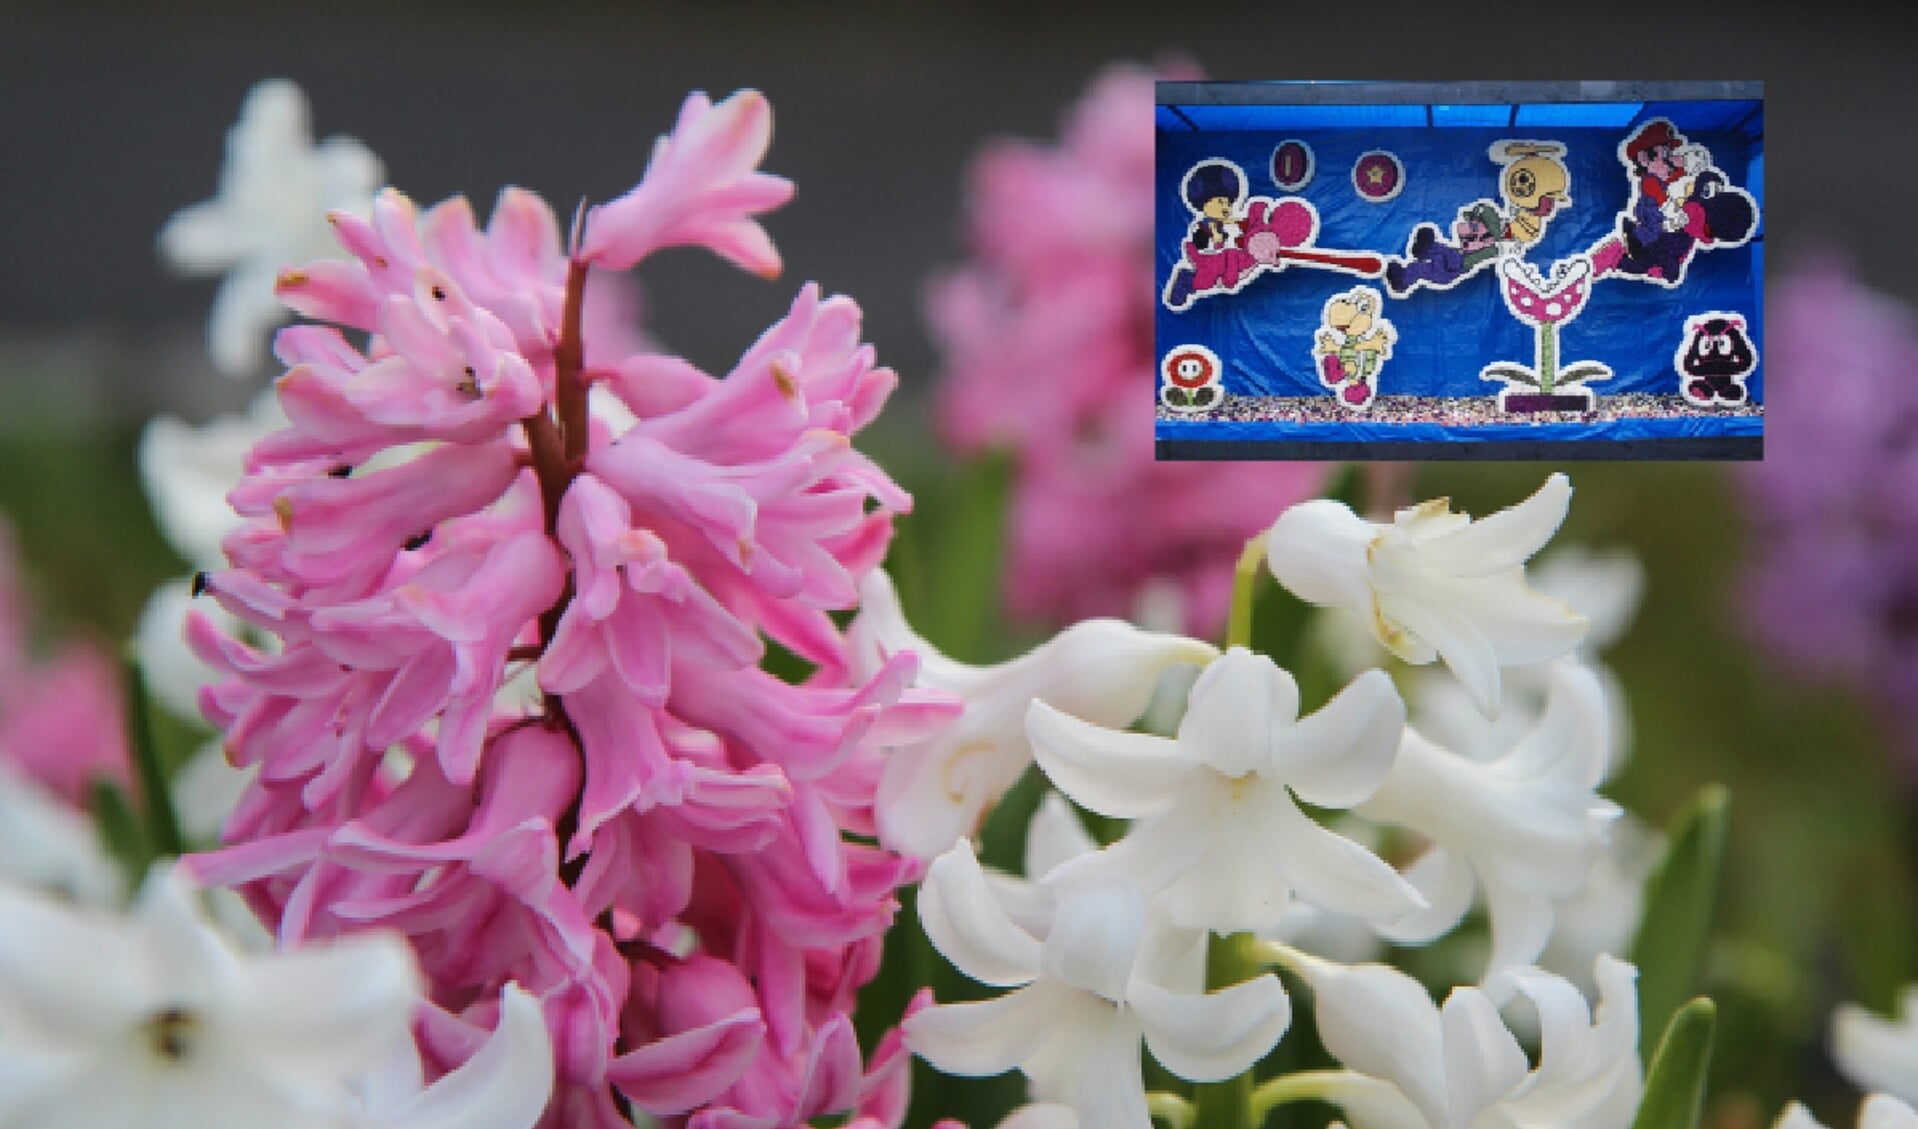 De hyacint is de belangrijkste bloem voor het steken van de mozaïeken. Inzet: inzending van Kindervreugd vorig jaar.